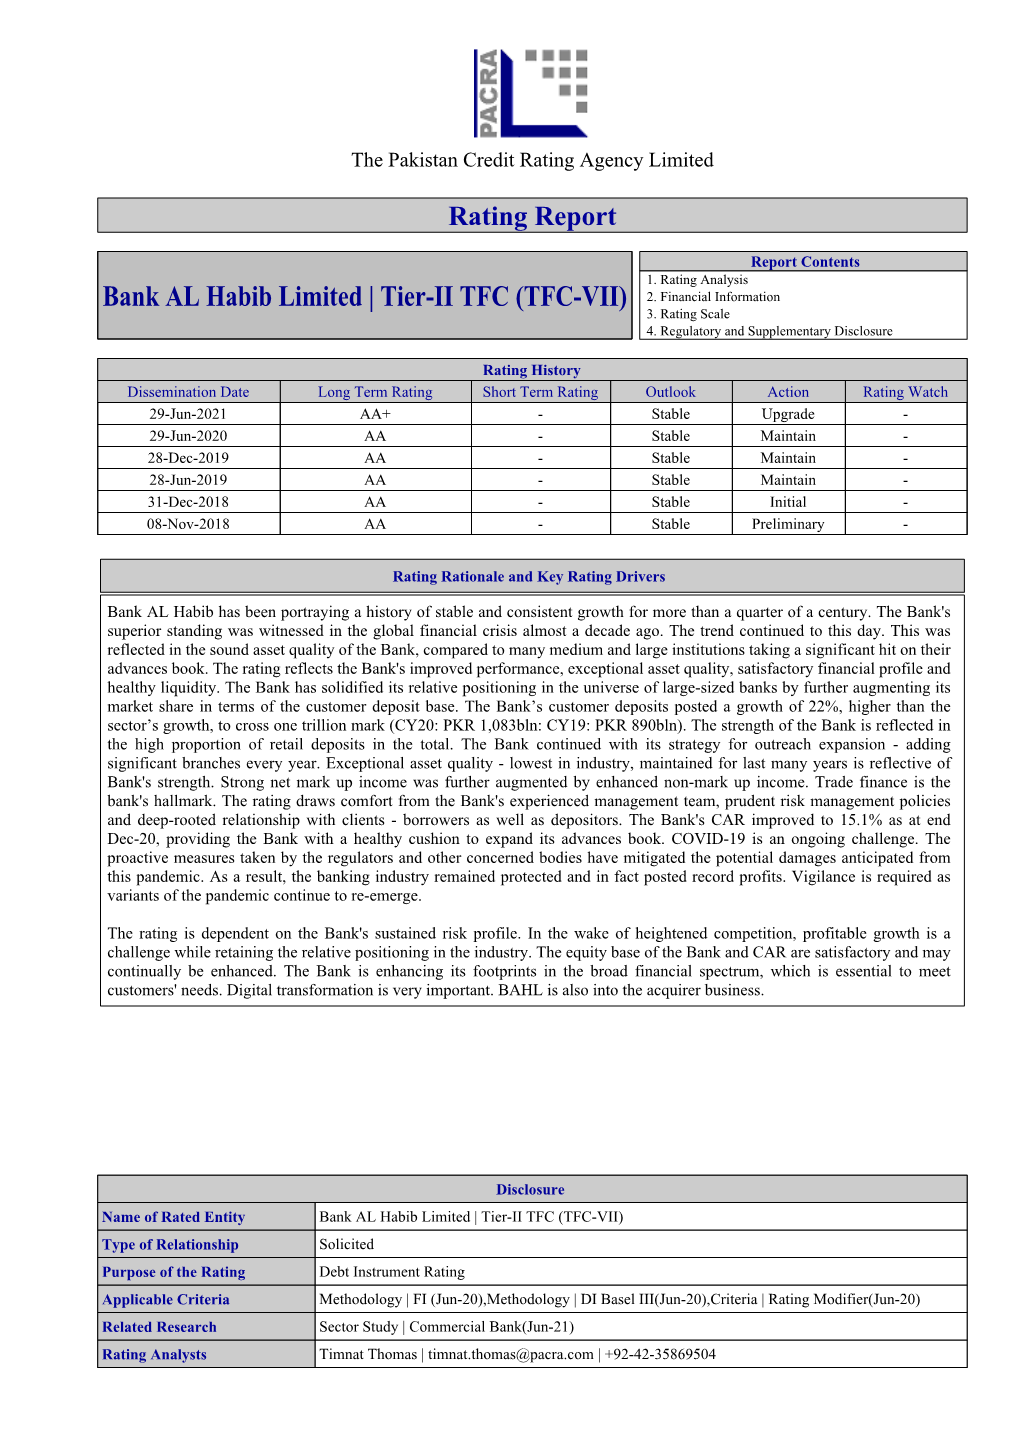 Bank AL Habib Limited | Tier-II TFC (TFC-VII) 2